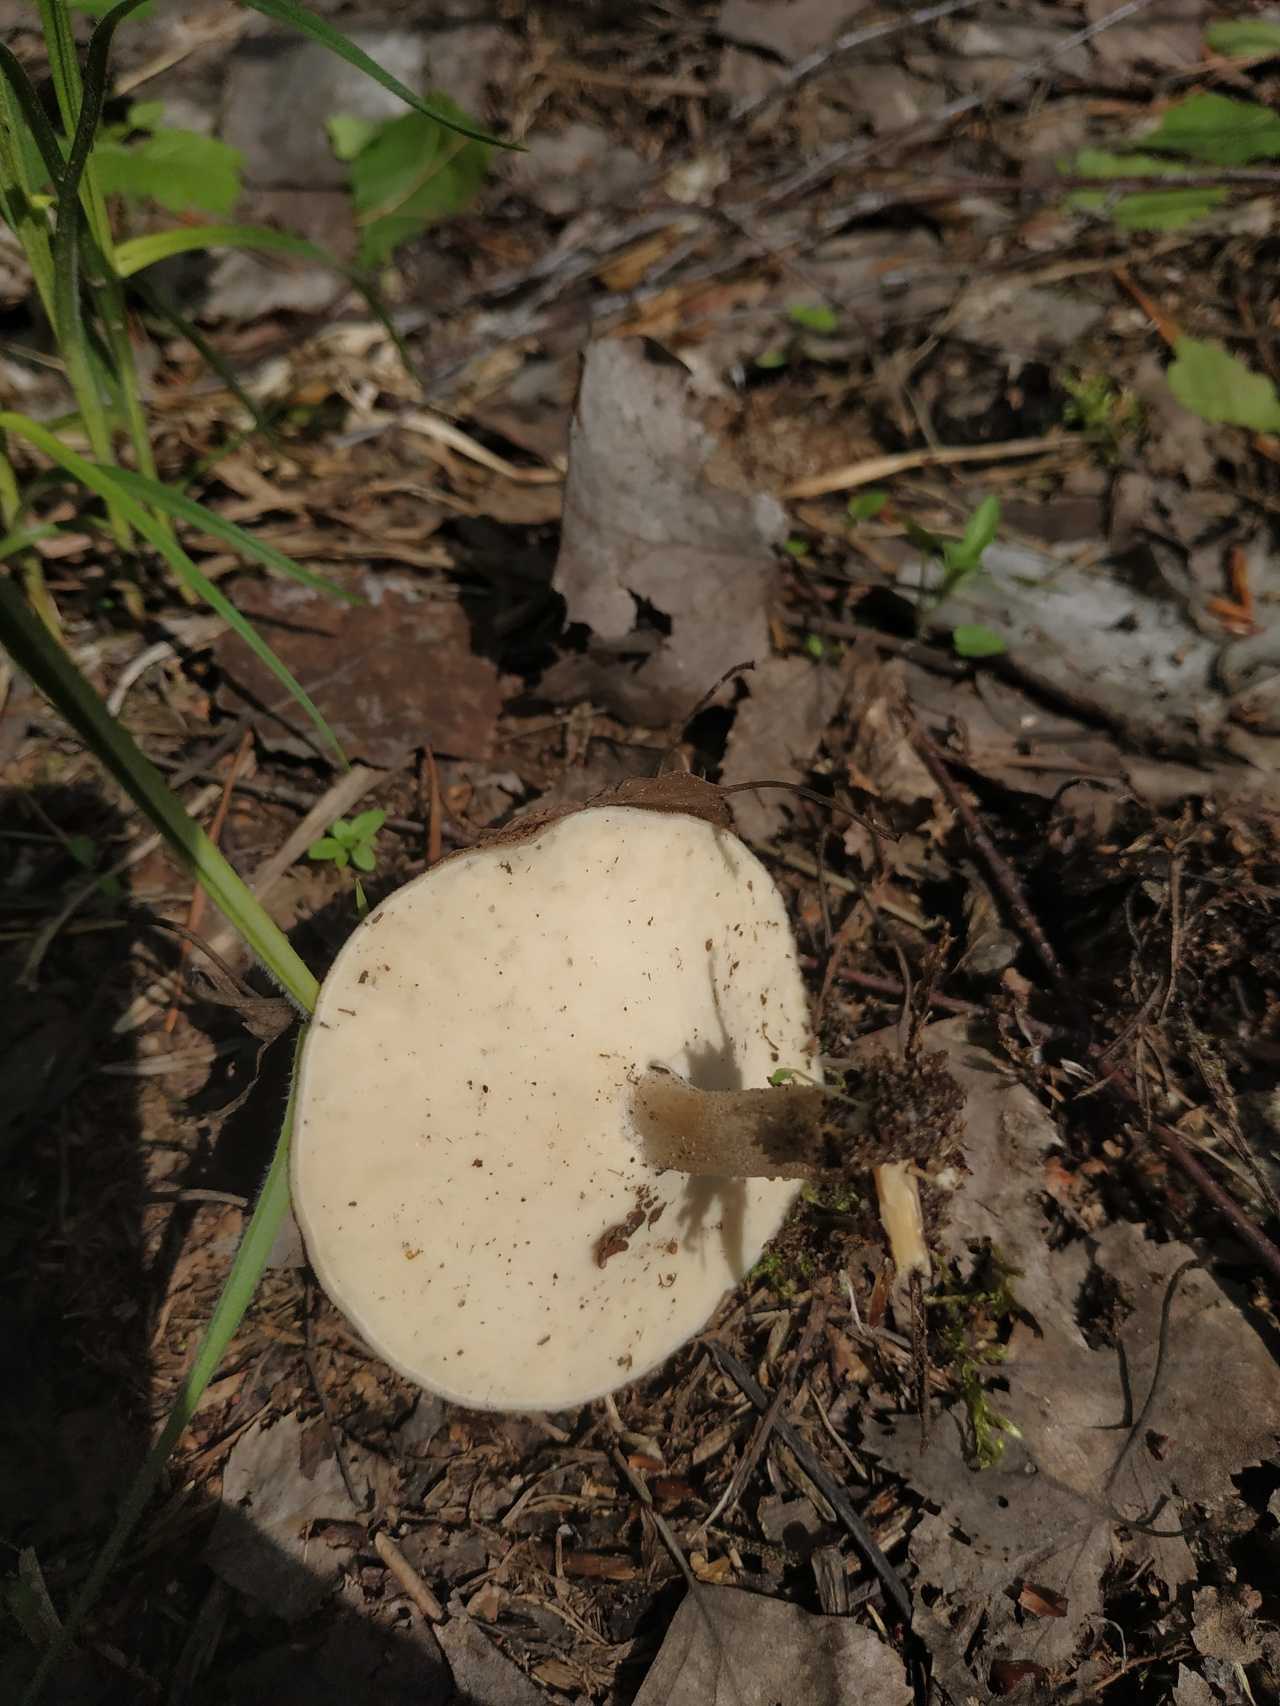 Трутовик окаймленный или древесная губка: фото гриба